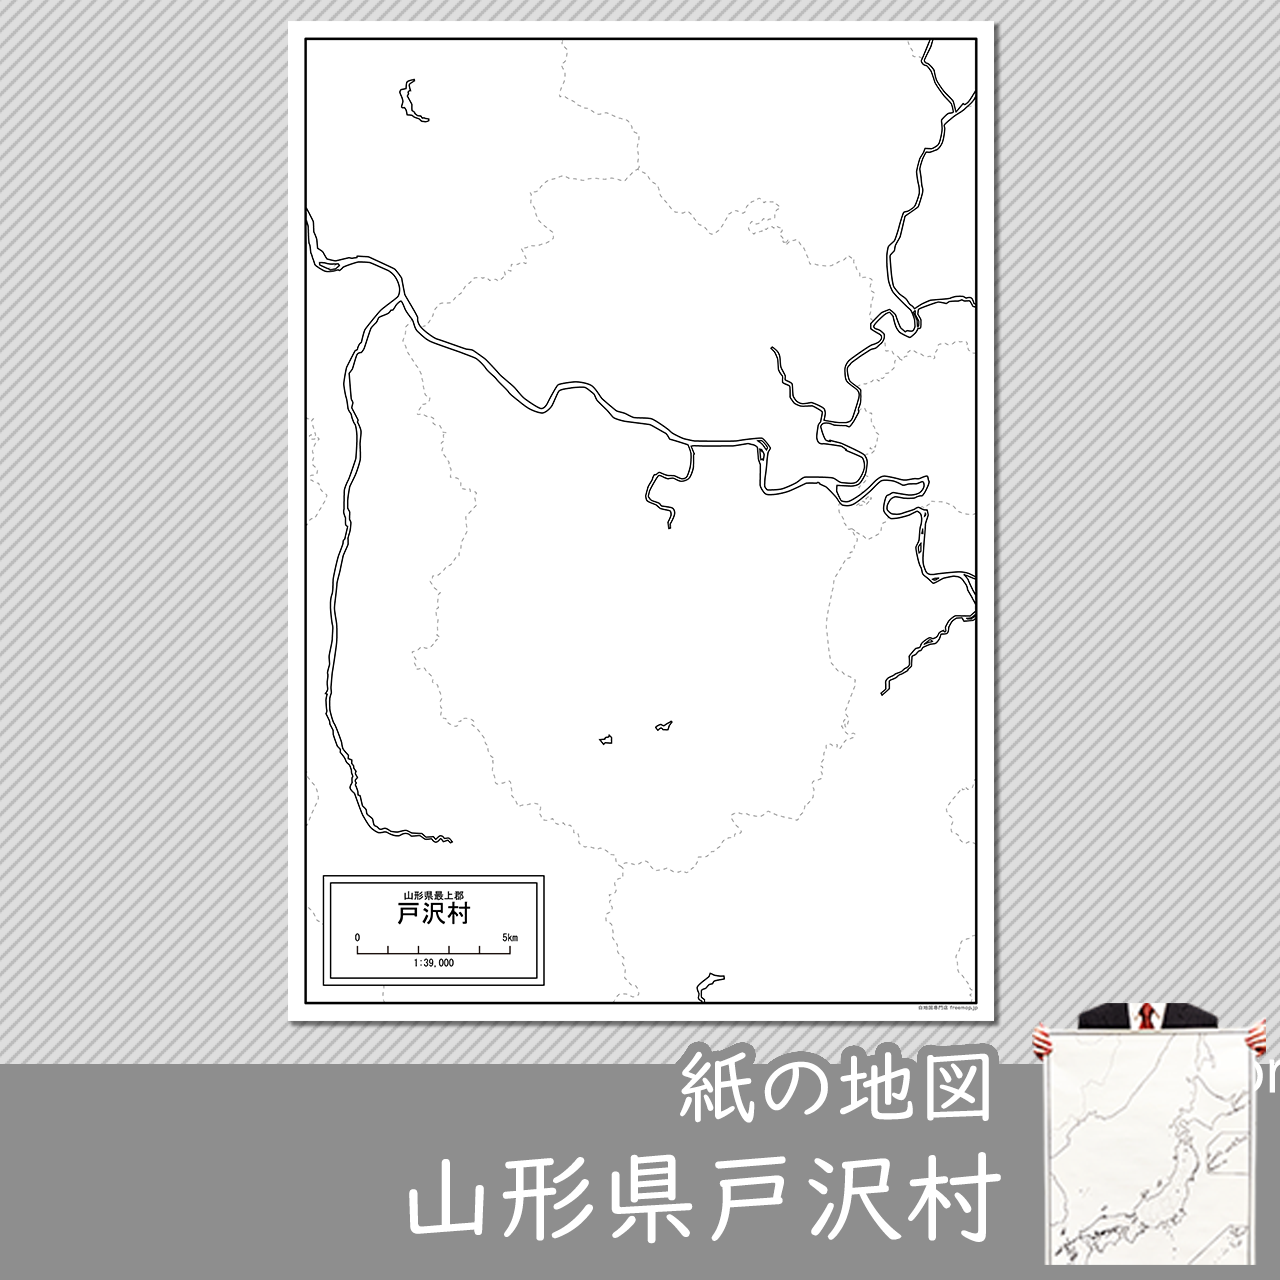 戸沢村の紙の白地図のサムネイル